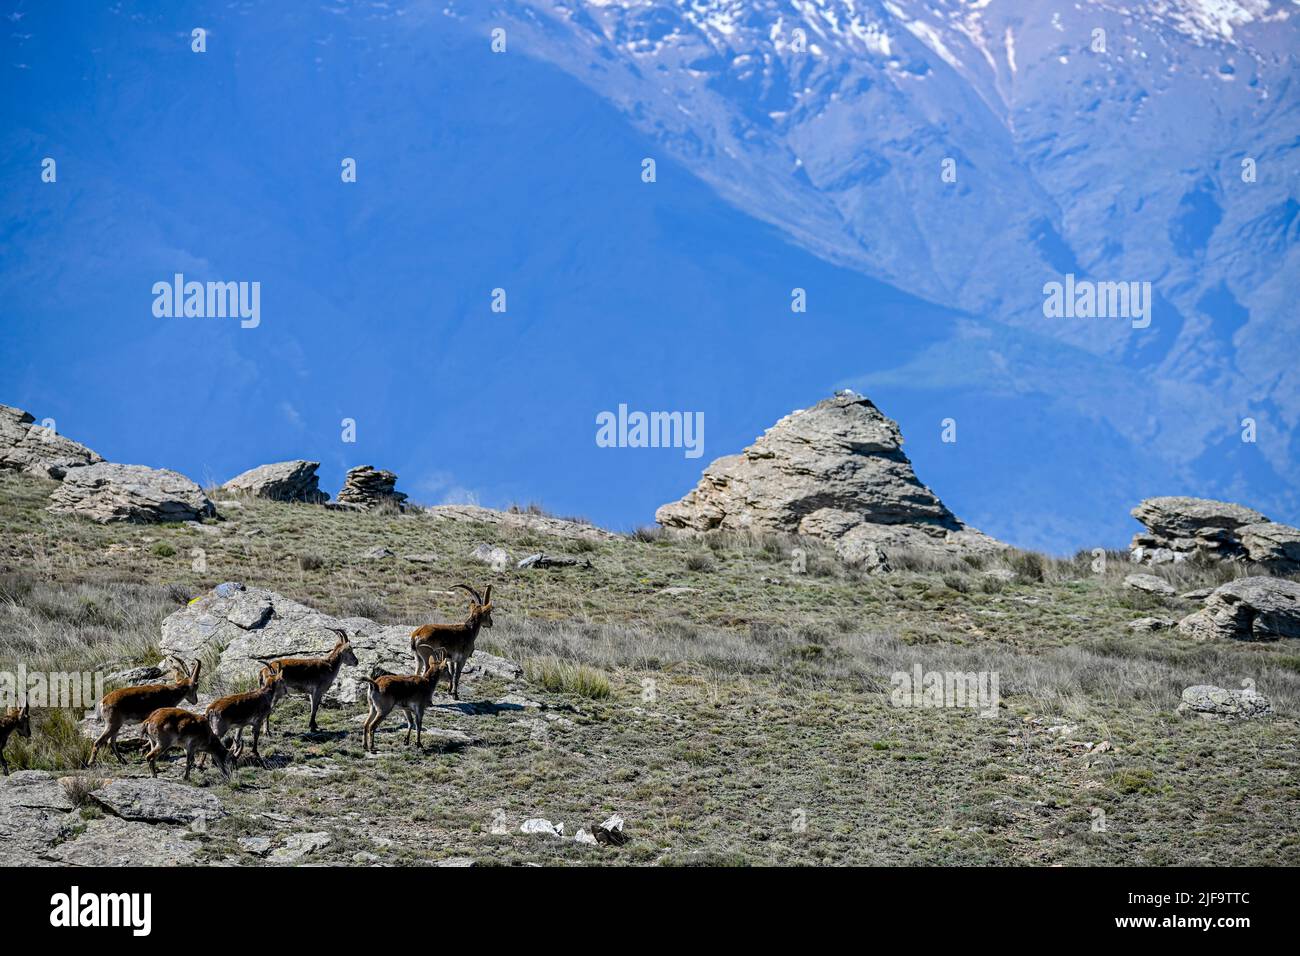 El ibex ibérico es una de las especies de bovides del género Capra que existen en Europa Foto de stock